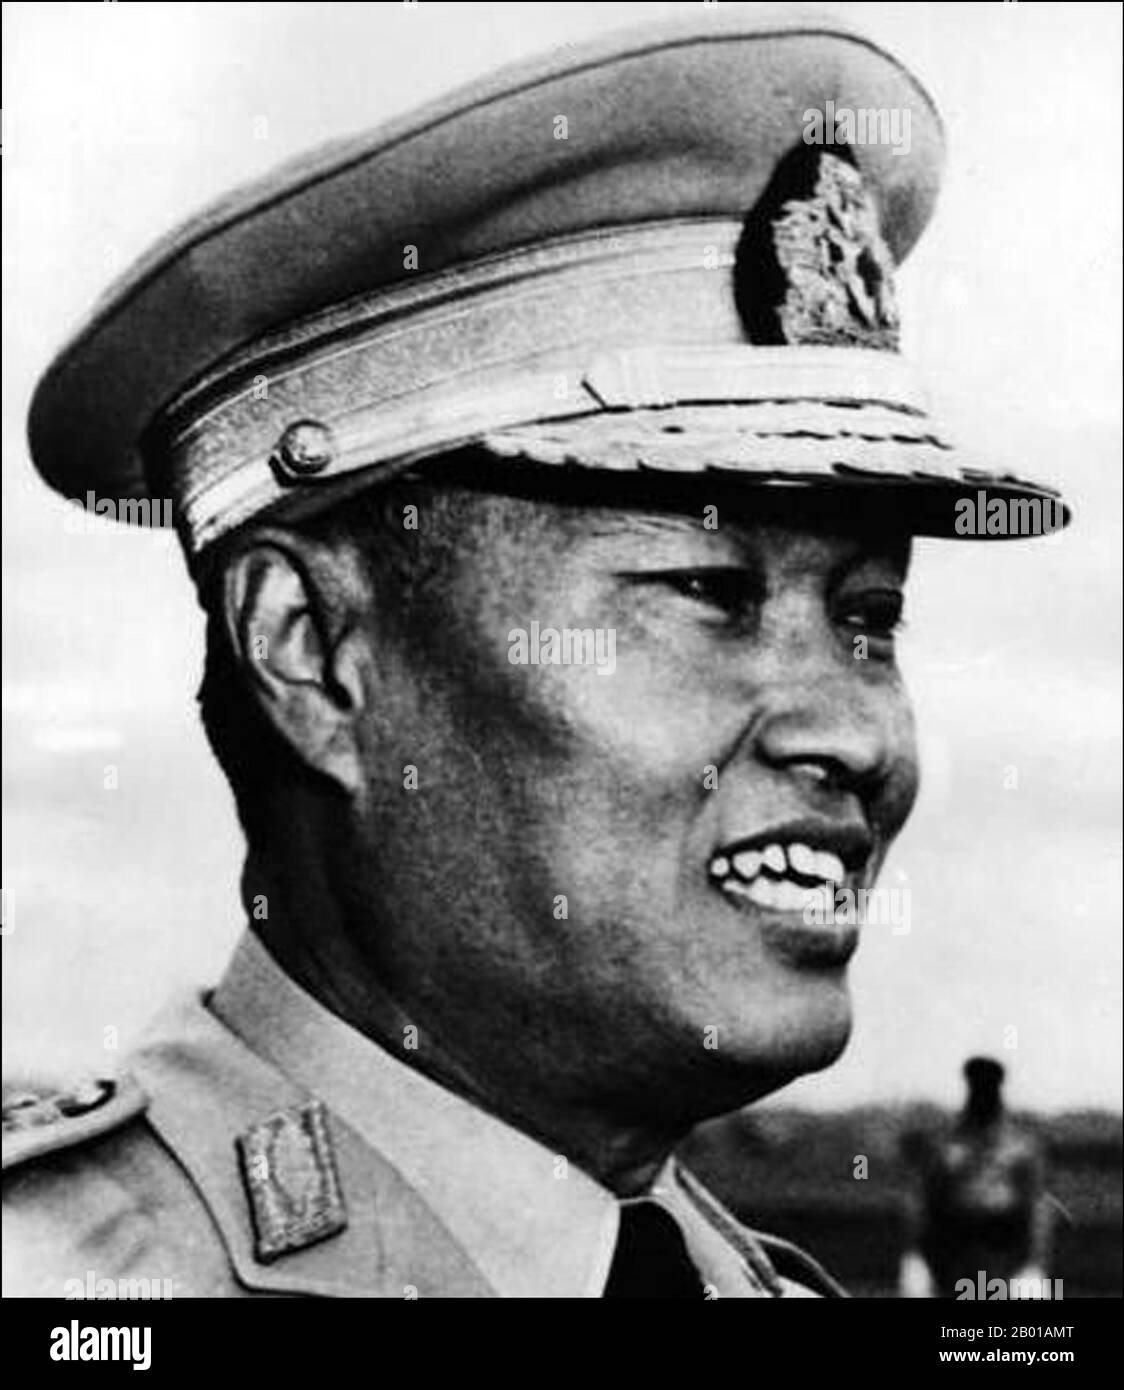 Birma/Myanmar: Ne Win (c. 1910-2002), Premierminister von Burma von 1958 bis 1960 und 1962 bis 1974 und auch Staatsoberhaupt von 1962 bis 1981. Ne Win (geboren am 24. Mai oder 14. Mai 1911 oder 10. Juli 1910 – 5. Dezember 2002) war Politiker und Militärkommandant. Er war von 1958 bis 1960 und 1962 bis 1974 Premierminister von Burma und von 1962 bis 1981 Staatsoberhaupt. Er war auch der Gründer und von 1963 bis 1988 Vorsitzender der Burma Socialist Program Party, die von 1964 bis 1988 die einzige politische Partei im birmanischen Nationalstaat war. Stockfoto